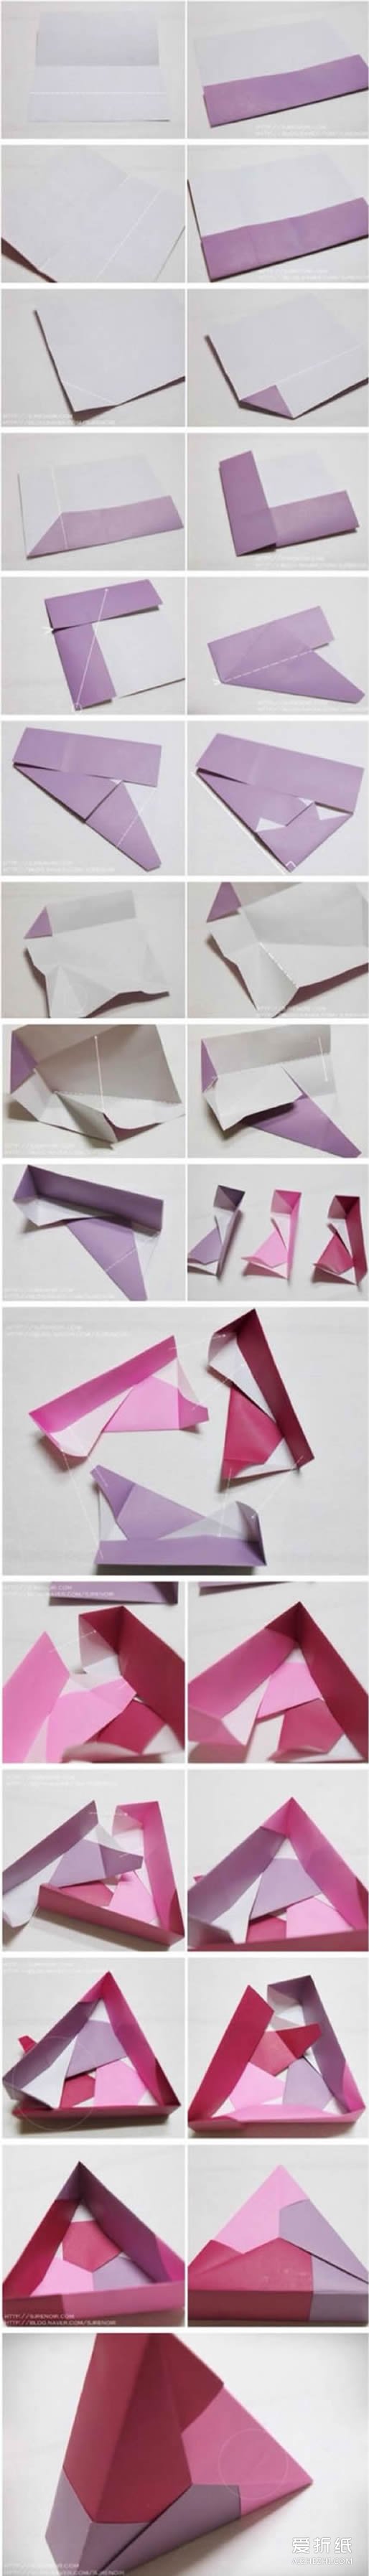 如何折纸三角形纸盒 带盖三角形糖果盒的折法- www.aizhezhi.com